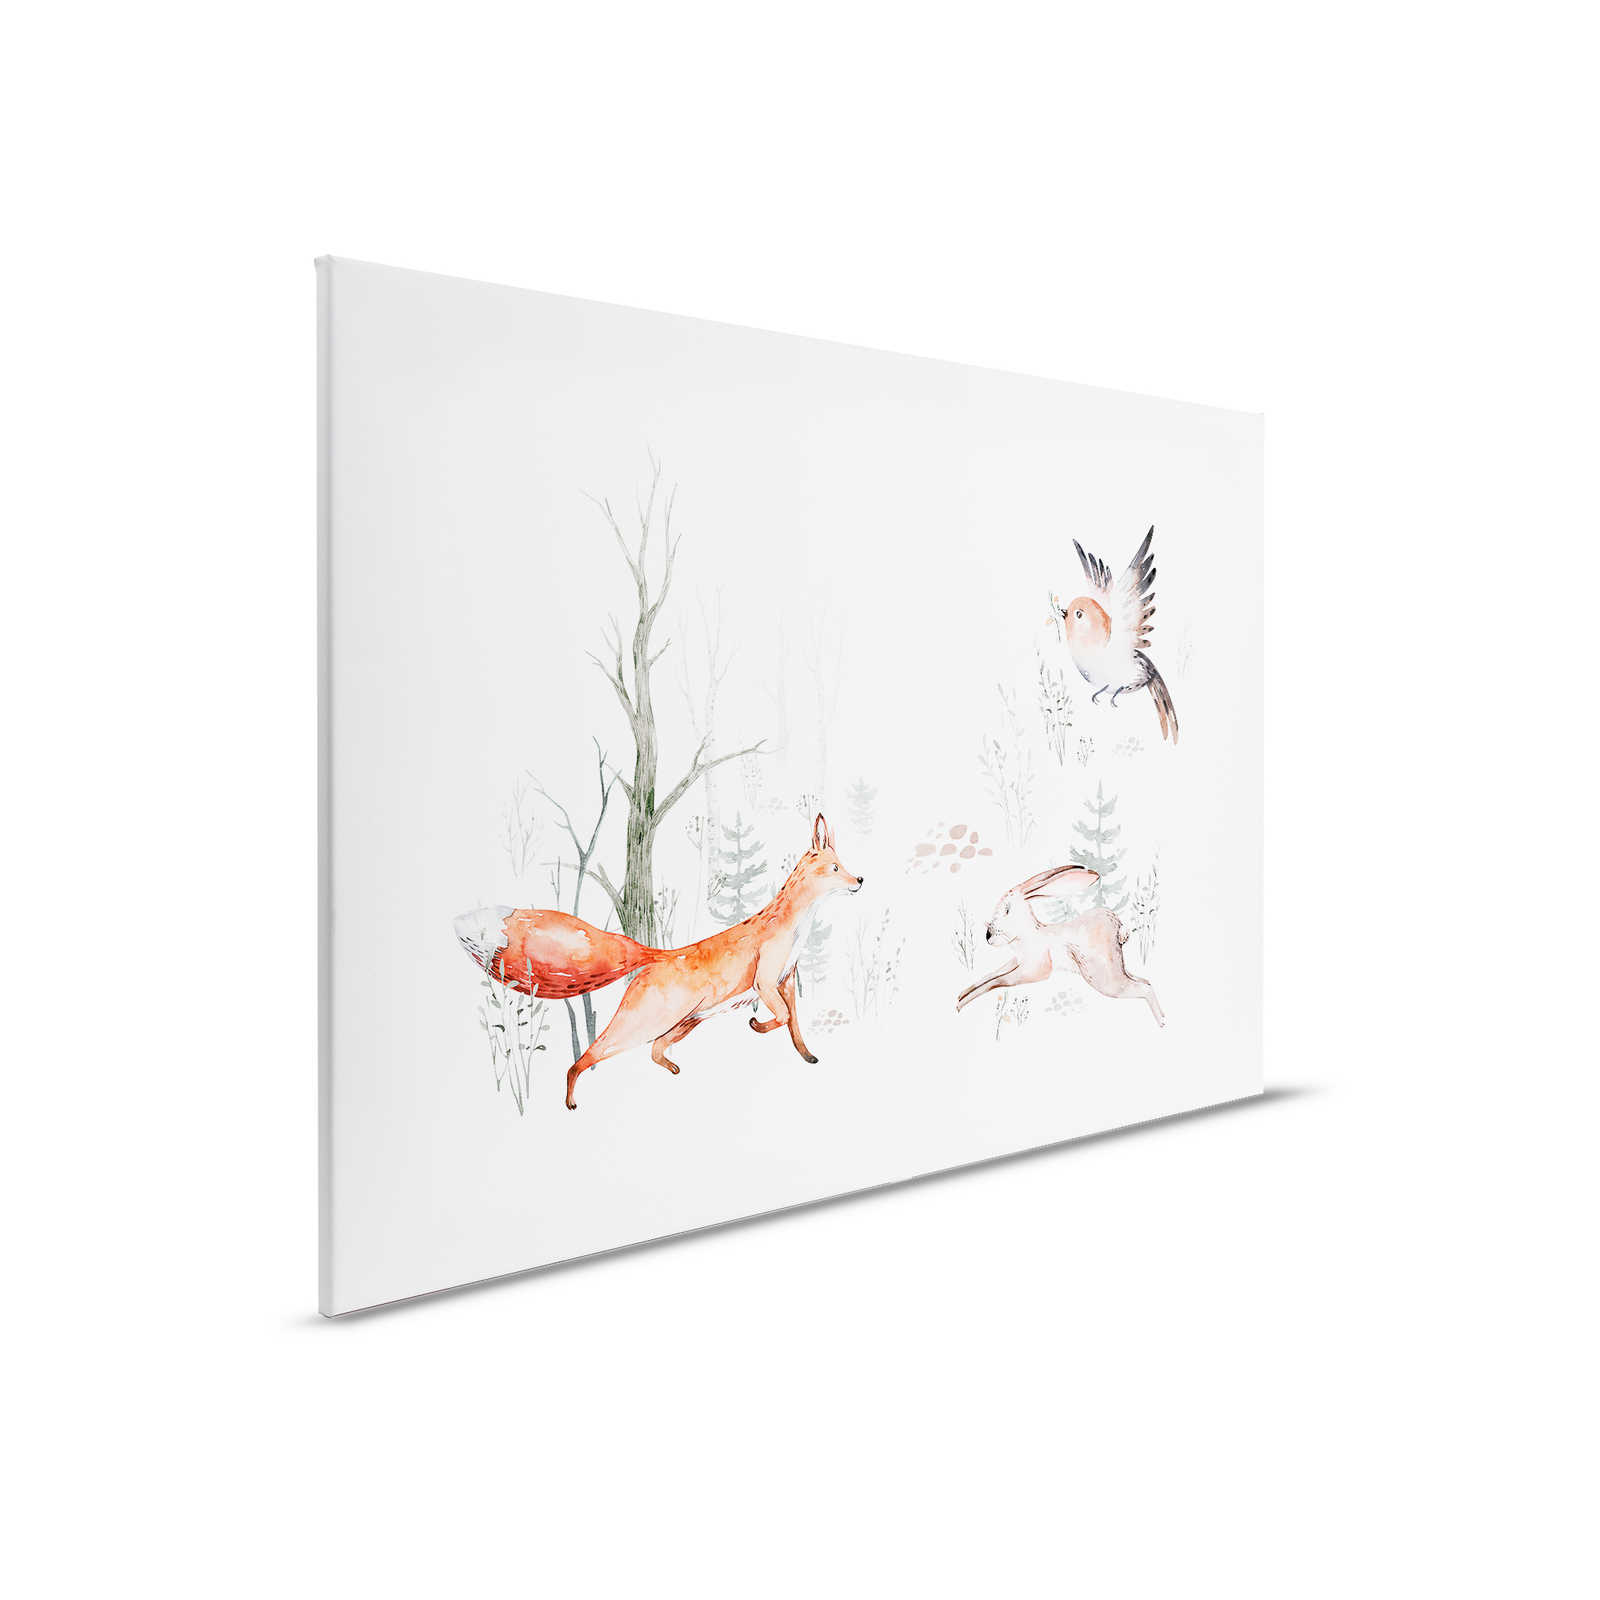 Cuadro en lienzo con animales en el bosque para la habitación de los niños - 0,90 m x 0,60 m
